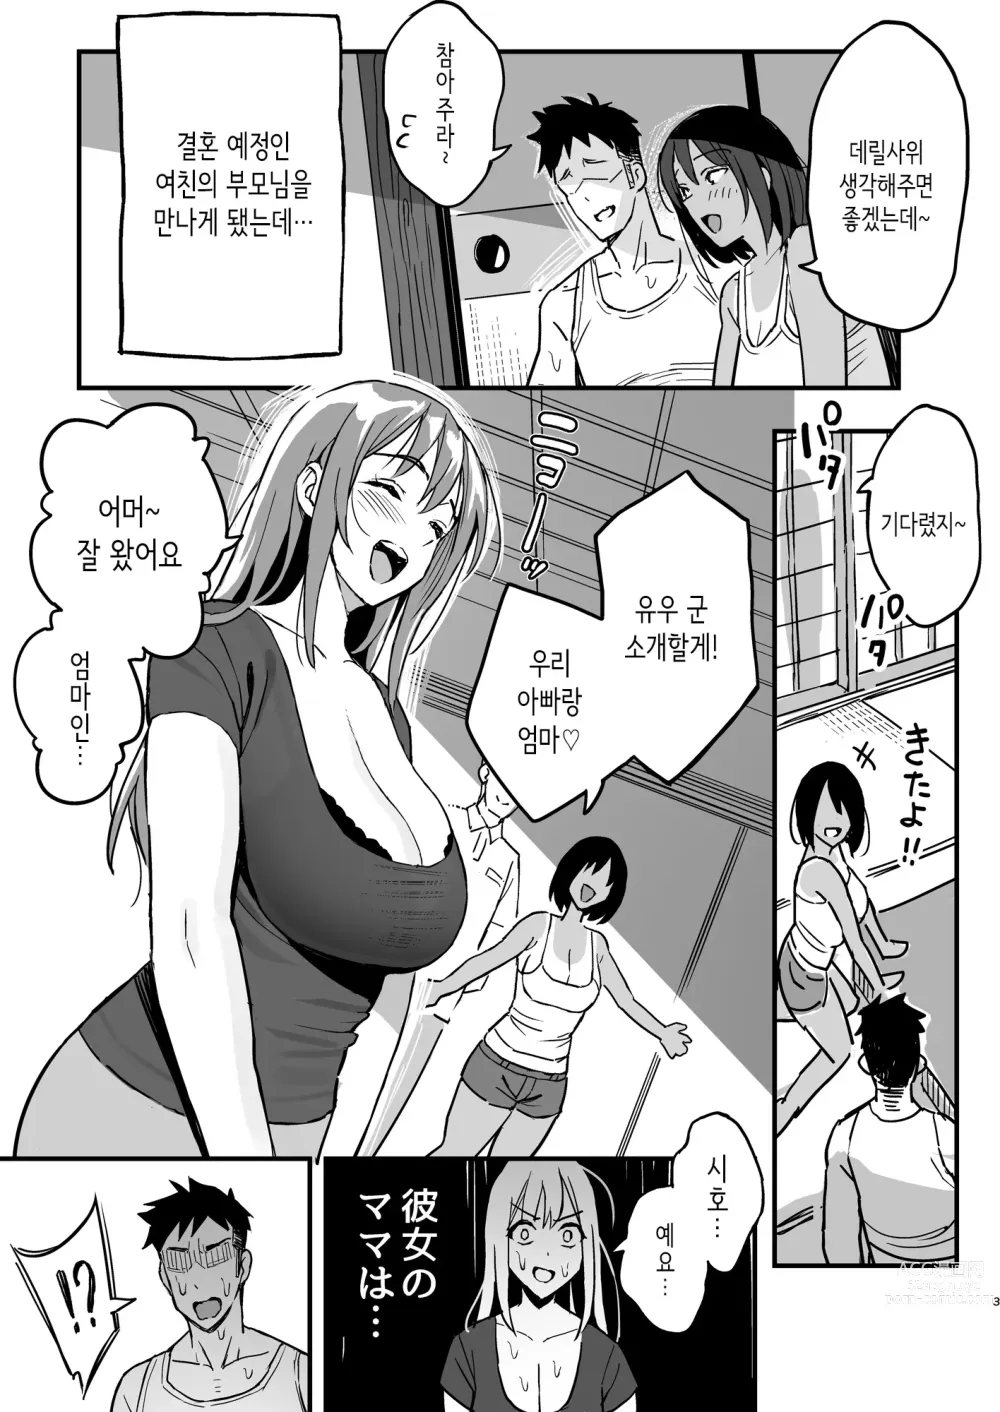 Page 2 of doujinshi 여친의 엄마는 마마카츠 엄마였다.